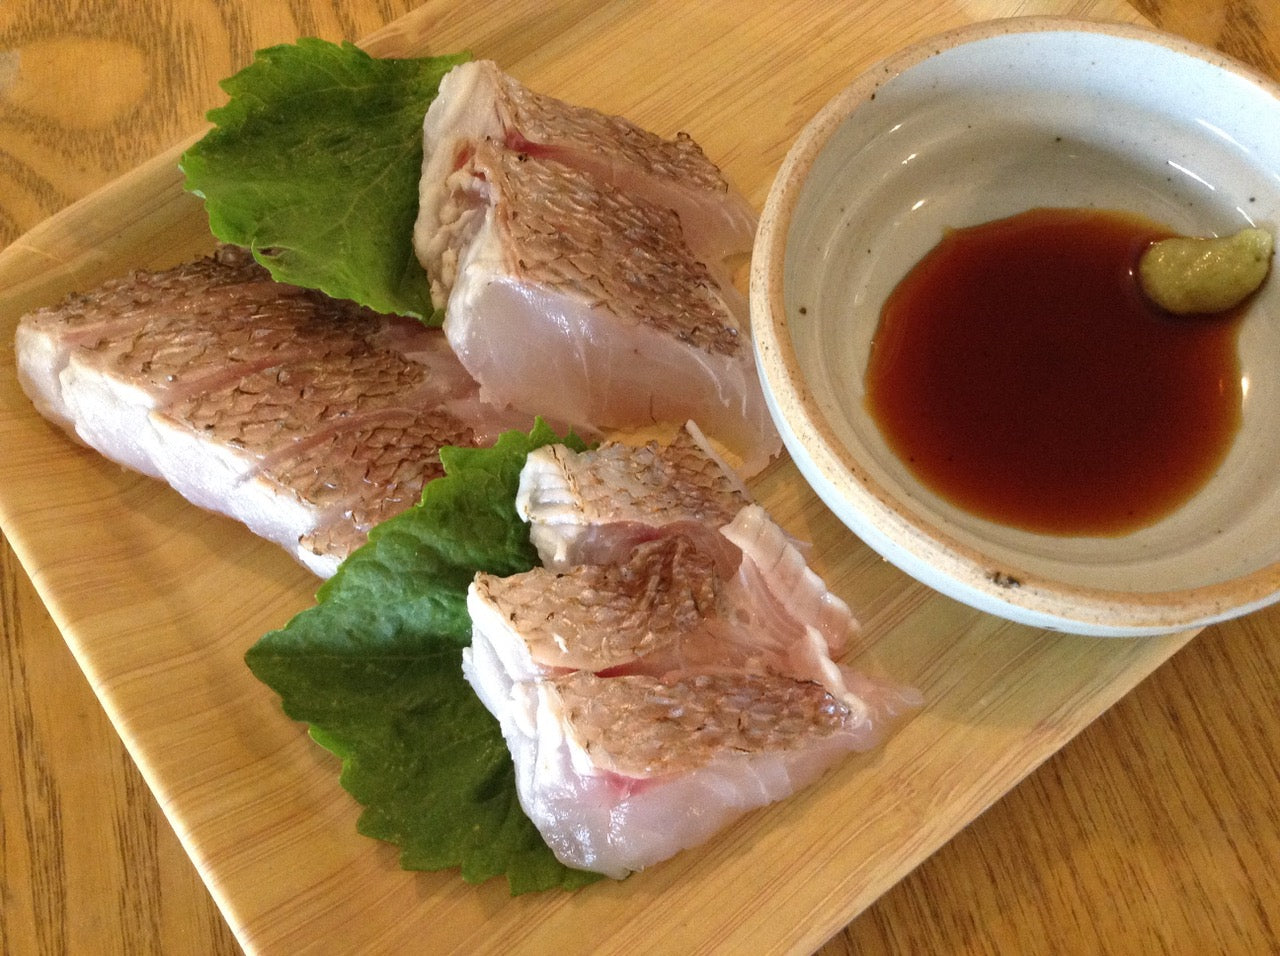 Adrian’s sashimi and fish recipes